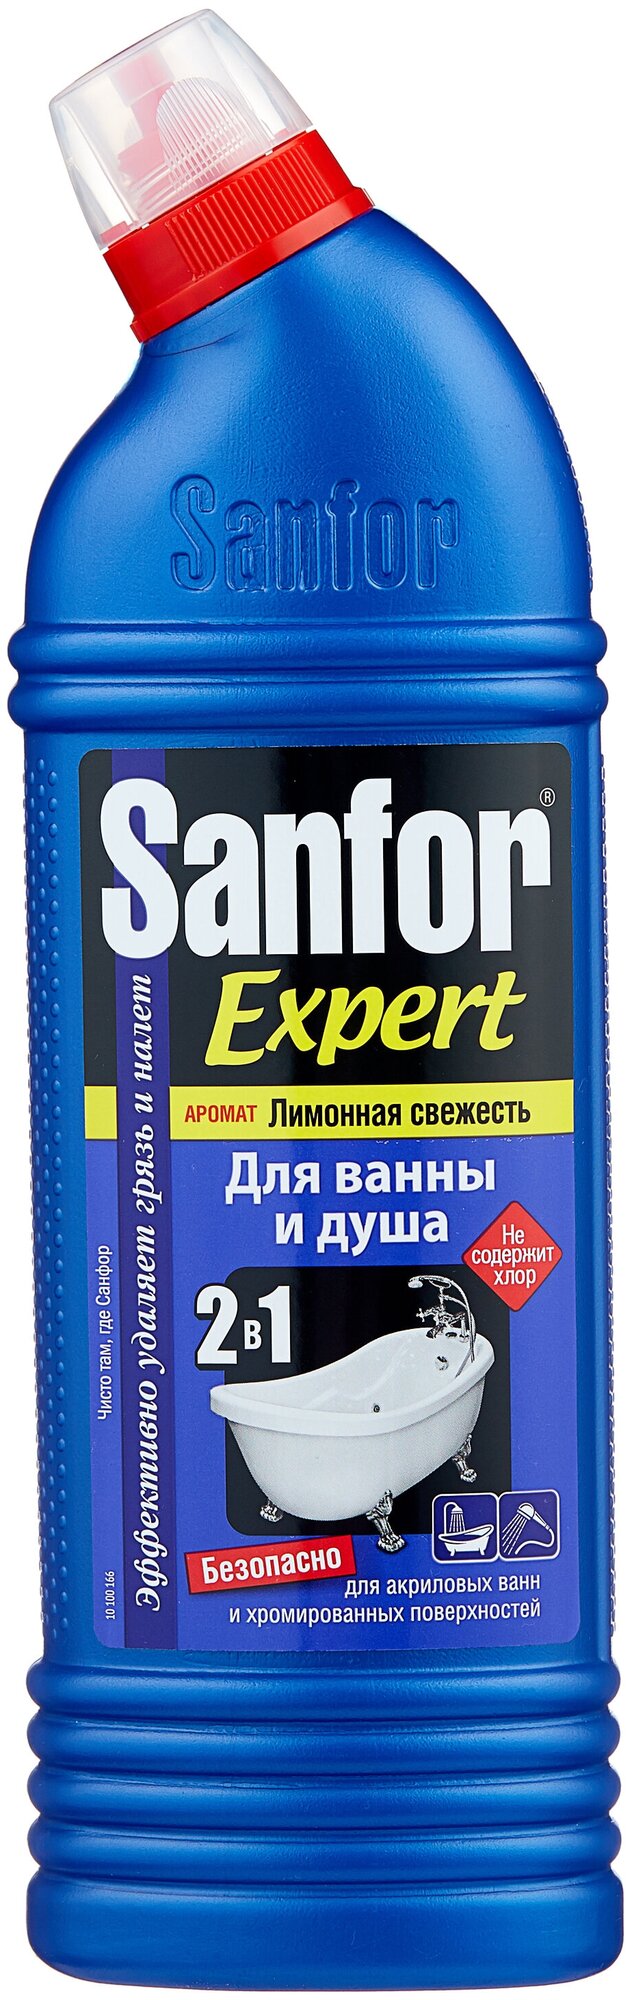 Sanfor гель для ванны и душа Expert Лимонная свежесть